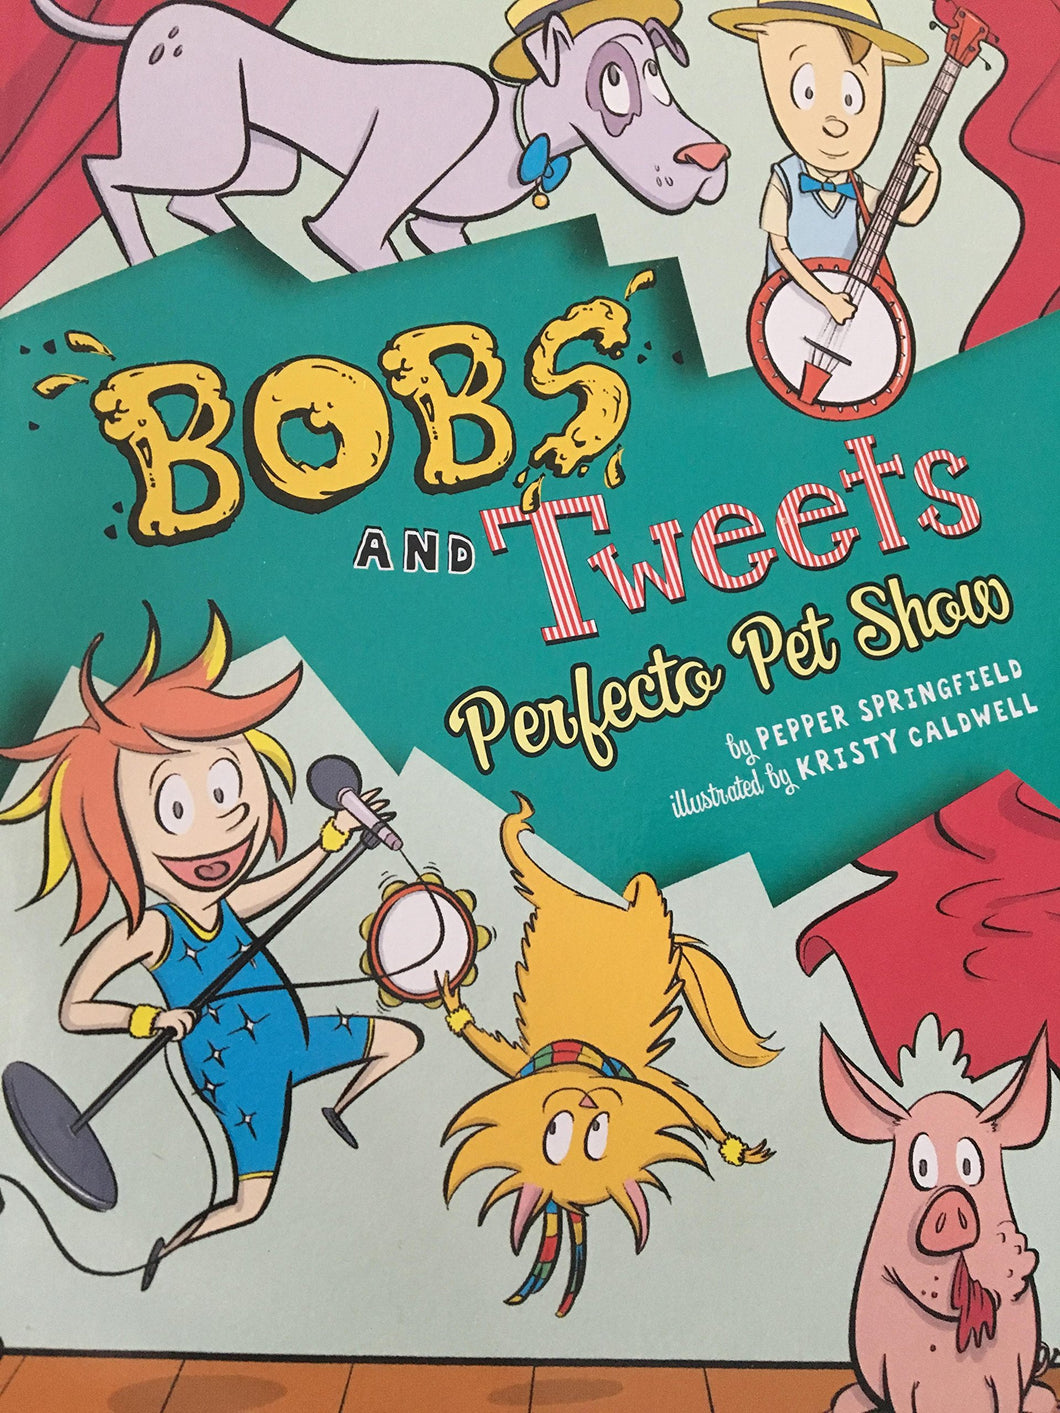 Bobs and Tweets Perfecto Pet Show